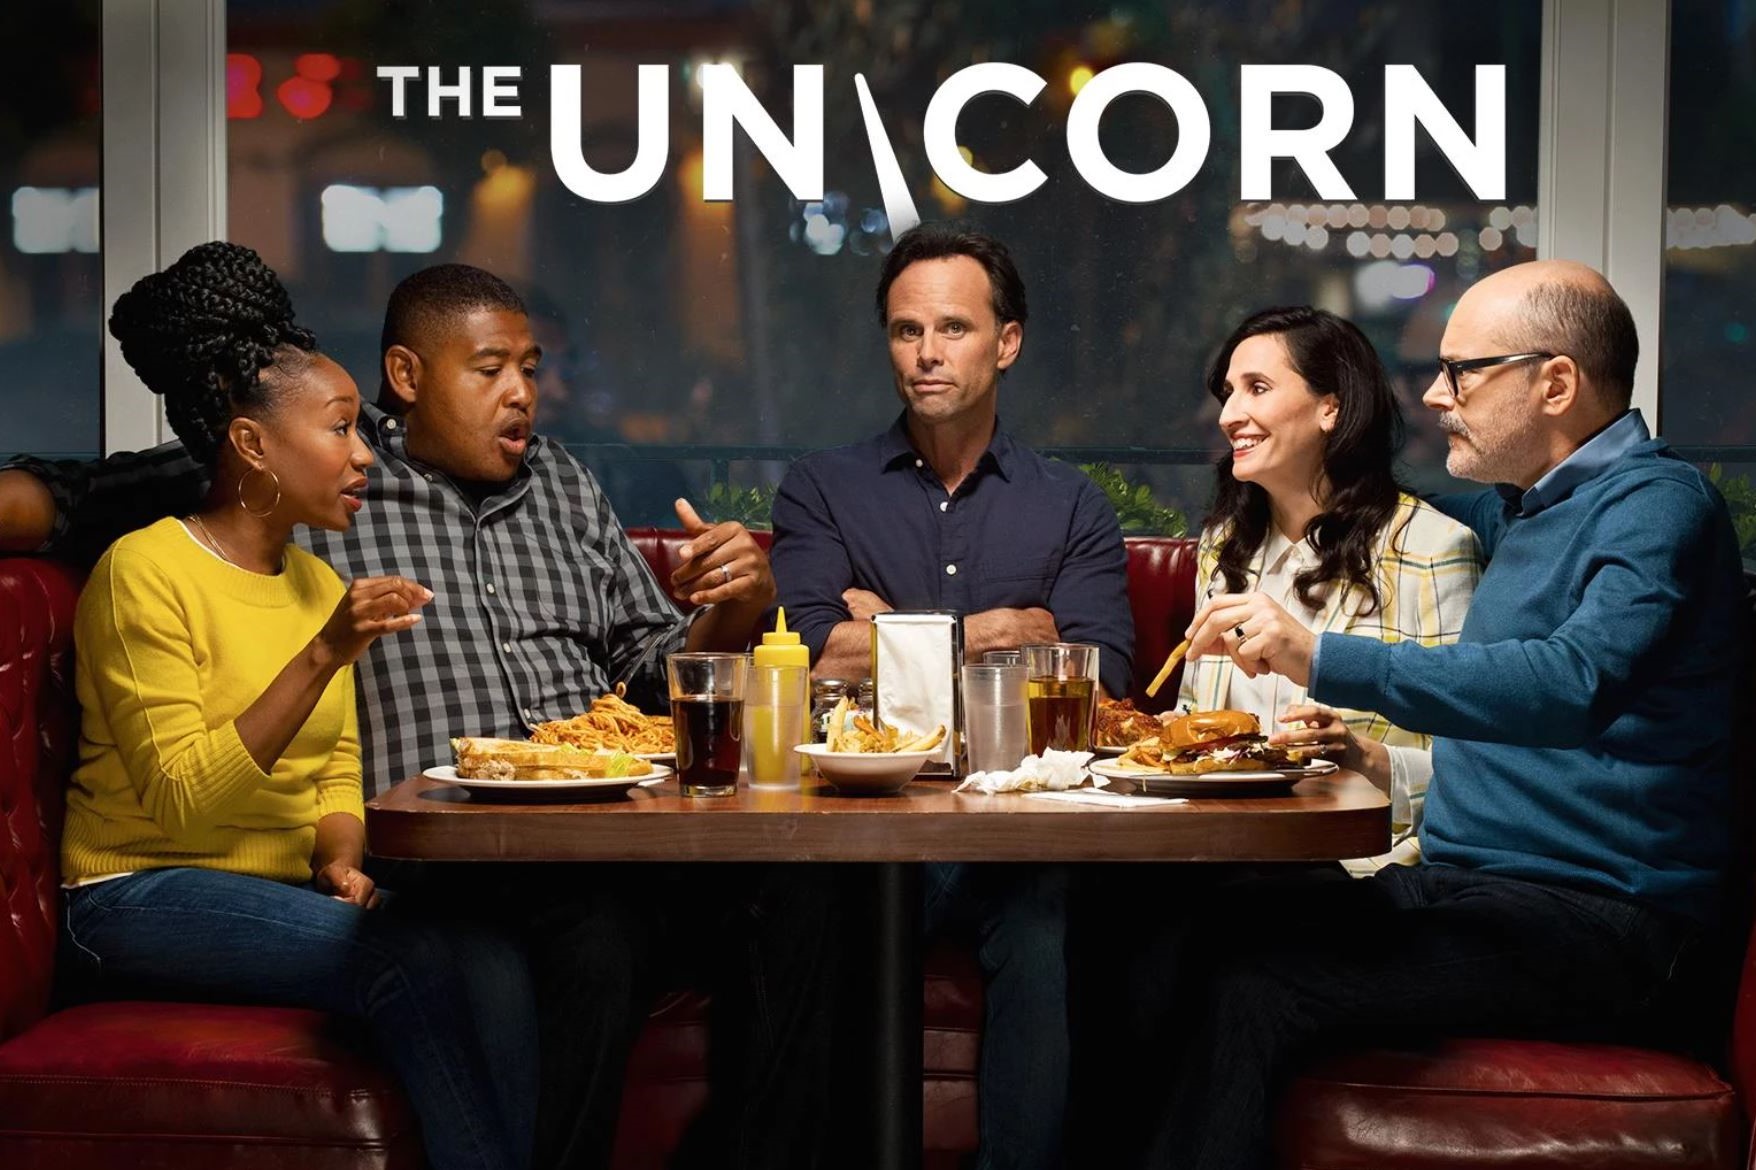 The Unicorn season 2 CBS